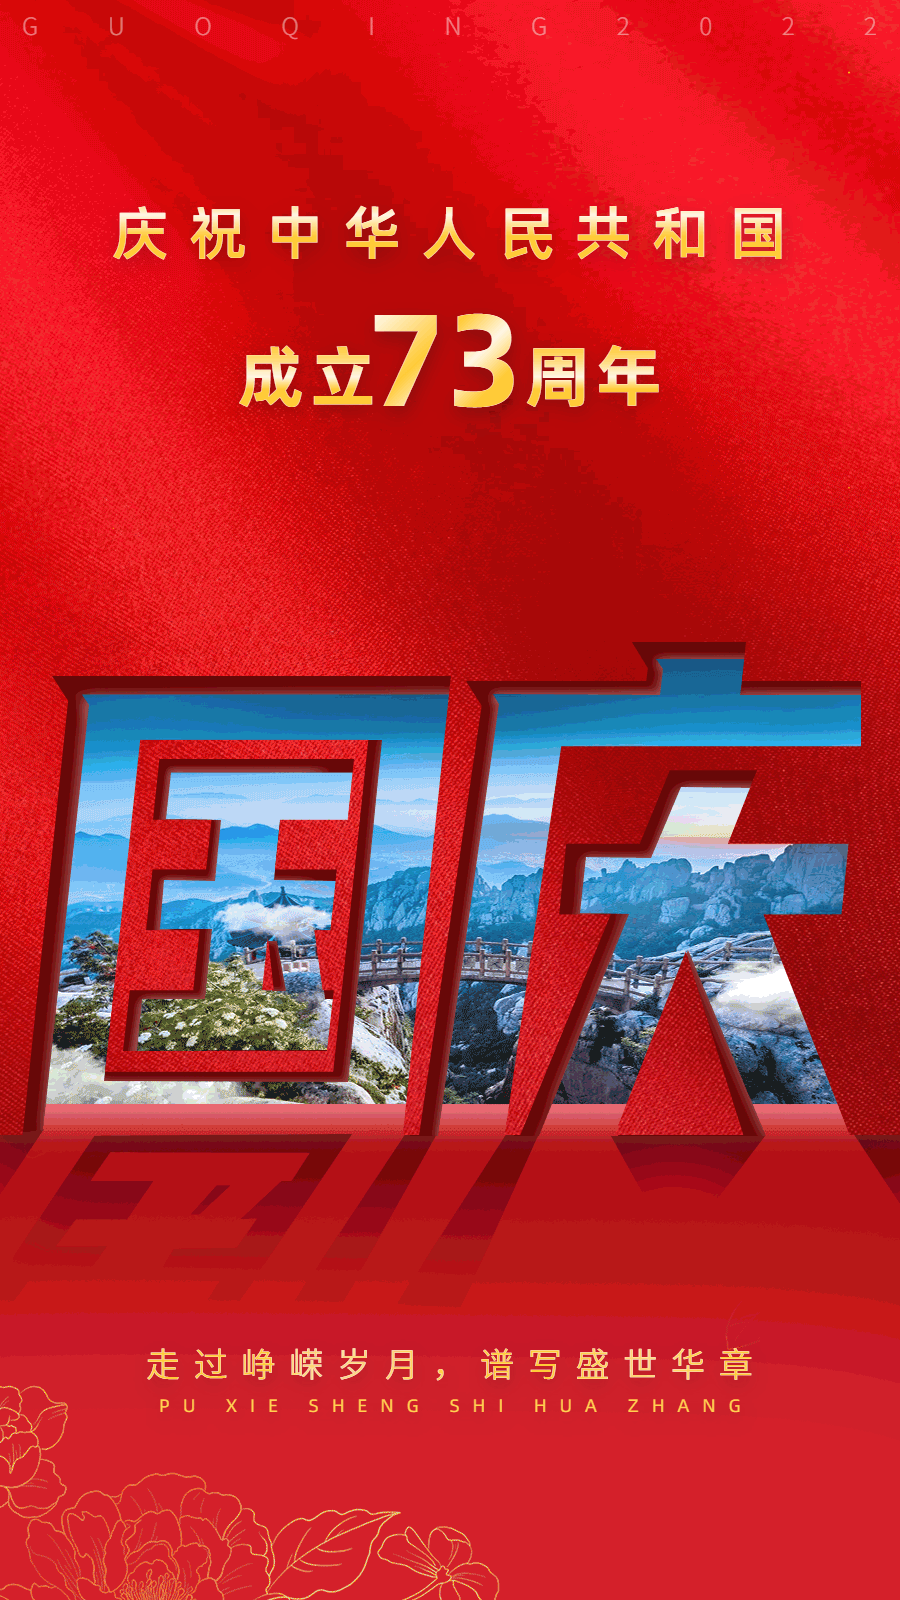 国庆节节日祝福合成动态海报